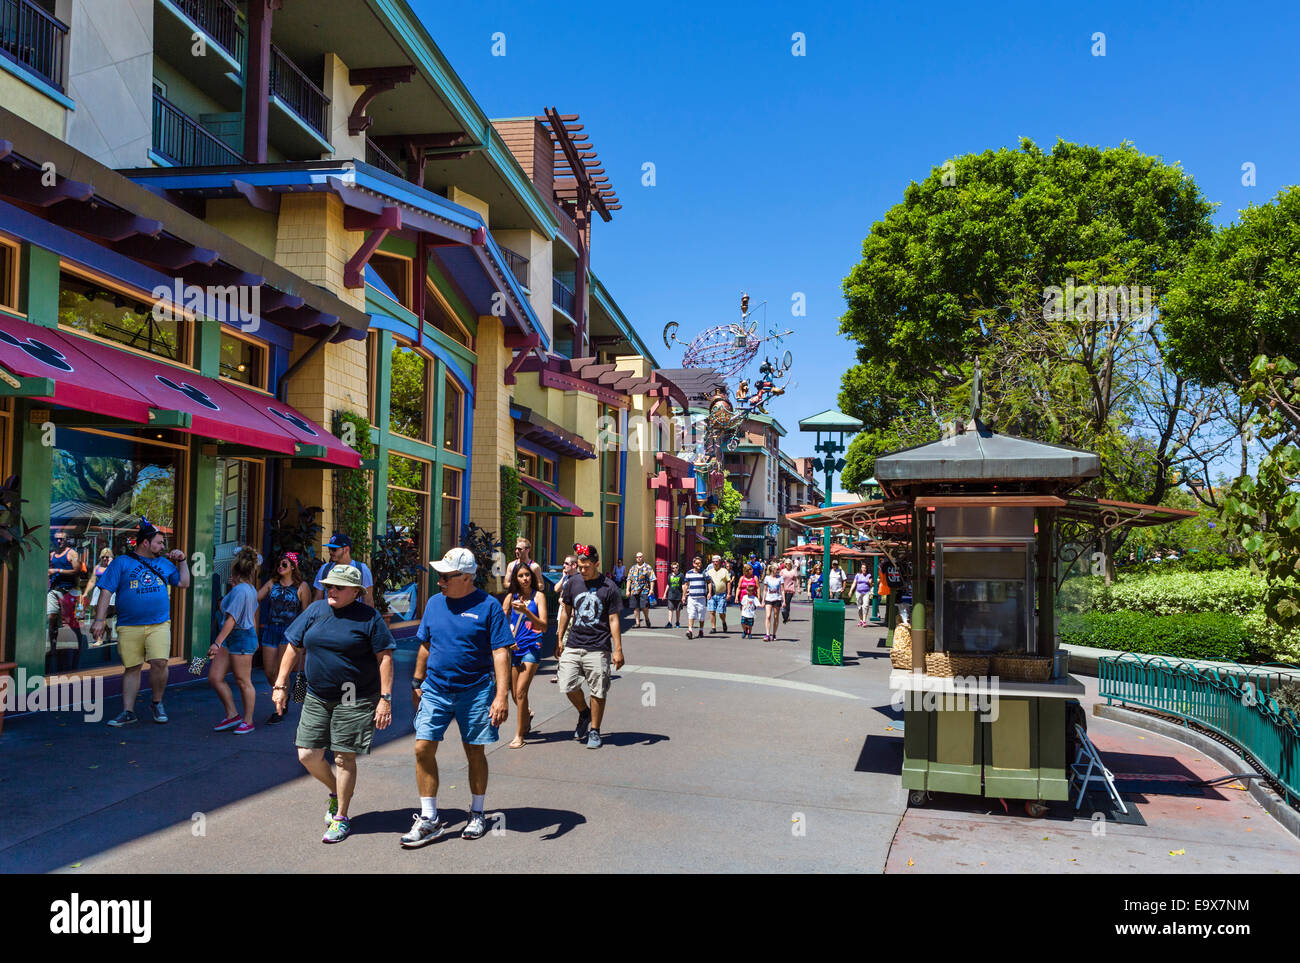 Tiendas y restaurantes en el centro de unidad en Disneyland, Anaheim, Condado de Orange, cerca de Los Ángeles, California, Estados Unidos. Foto de stock